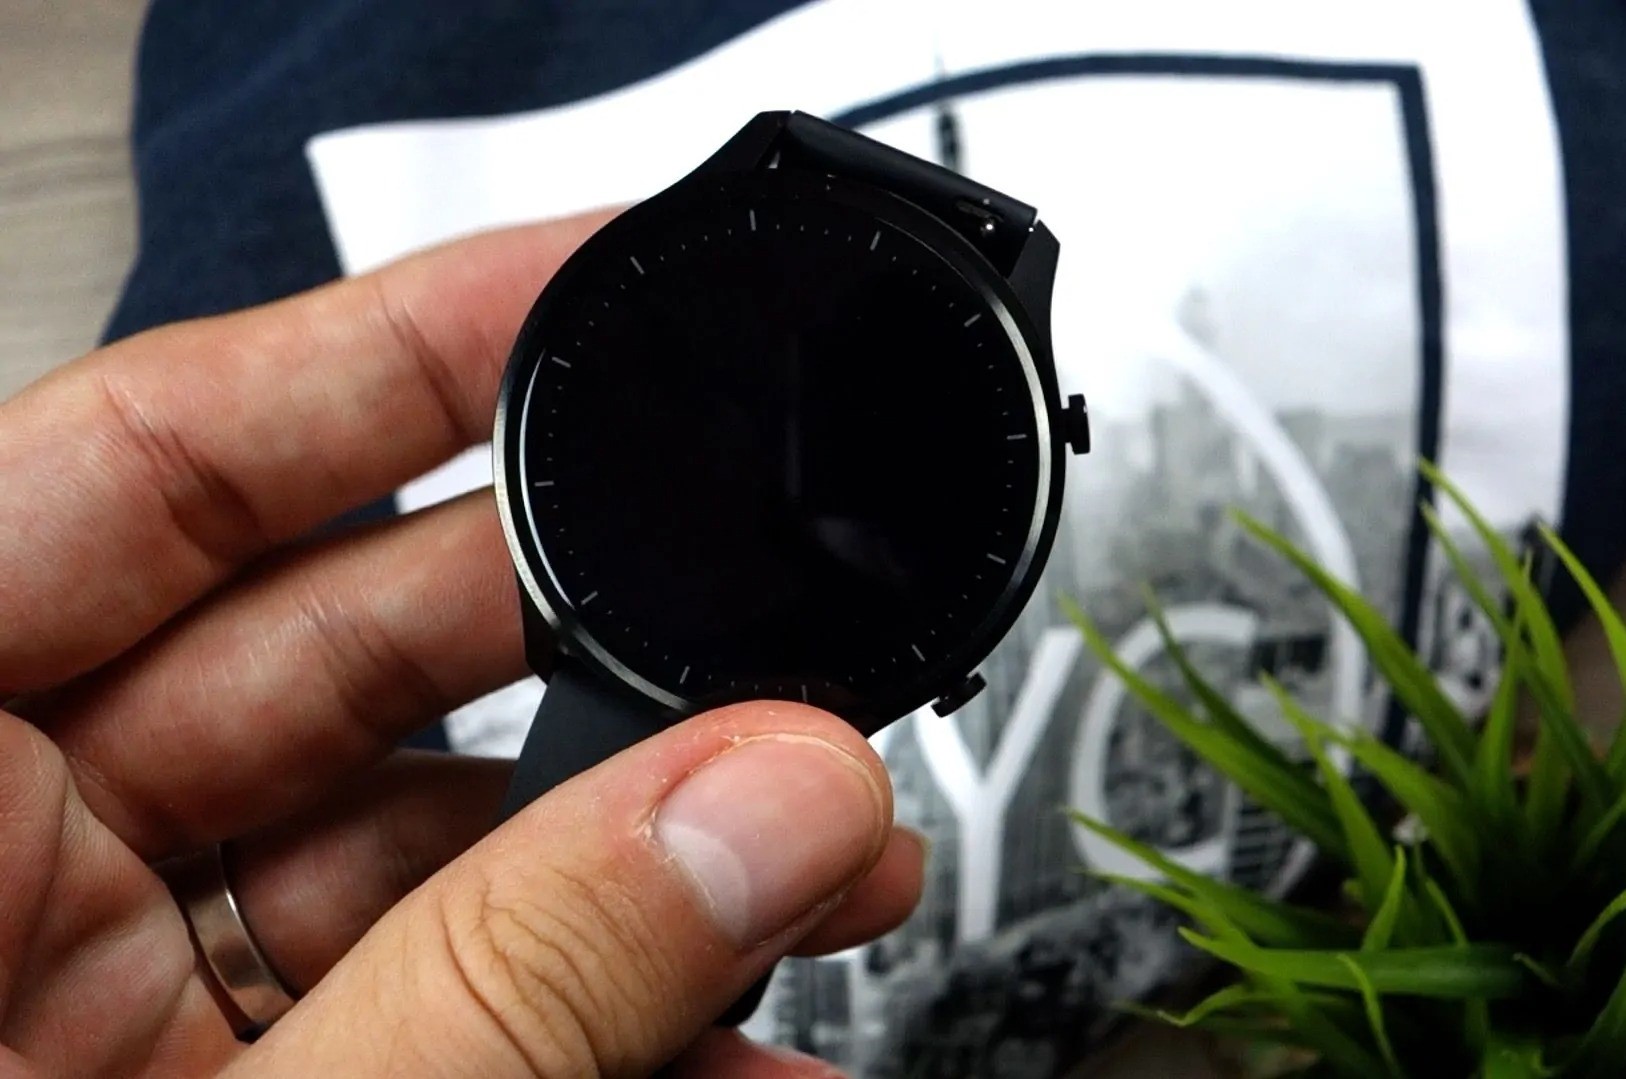 محصول شیائومی - xiaomi ساعت هوشمند شیائومی Watch Color